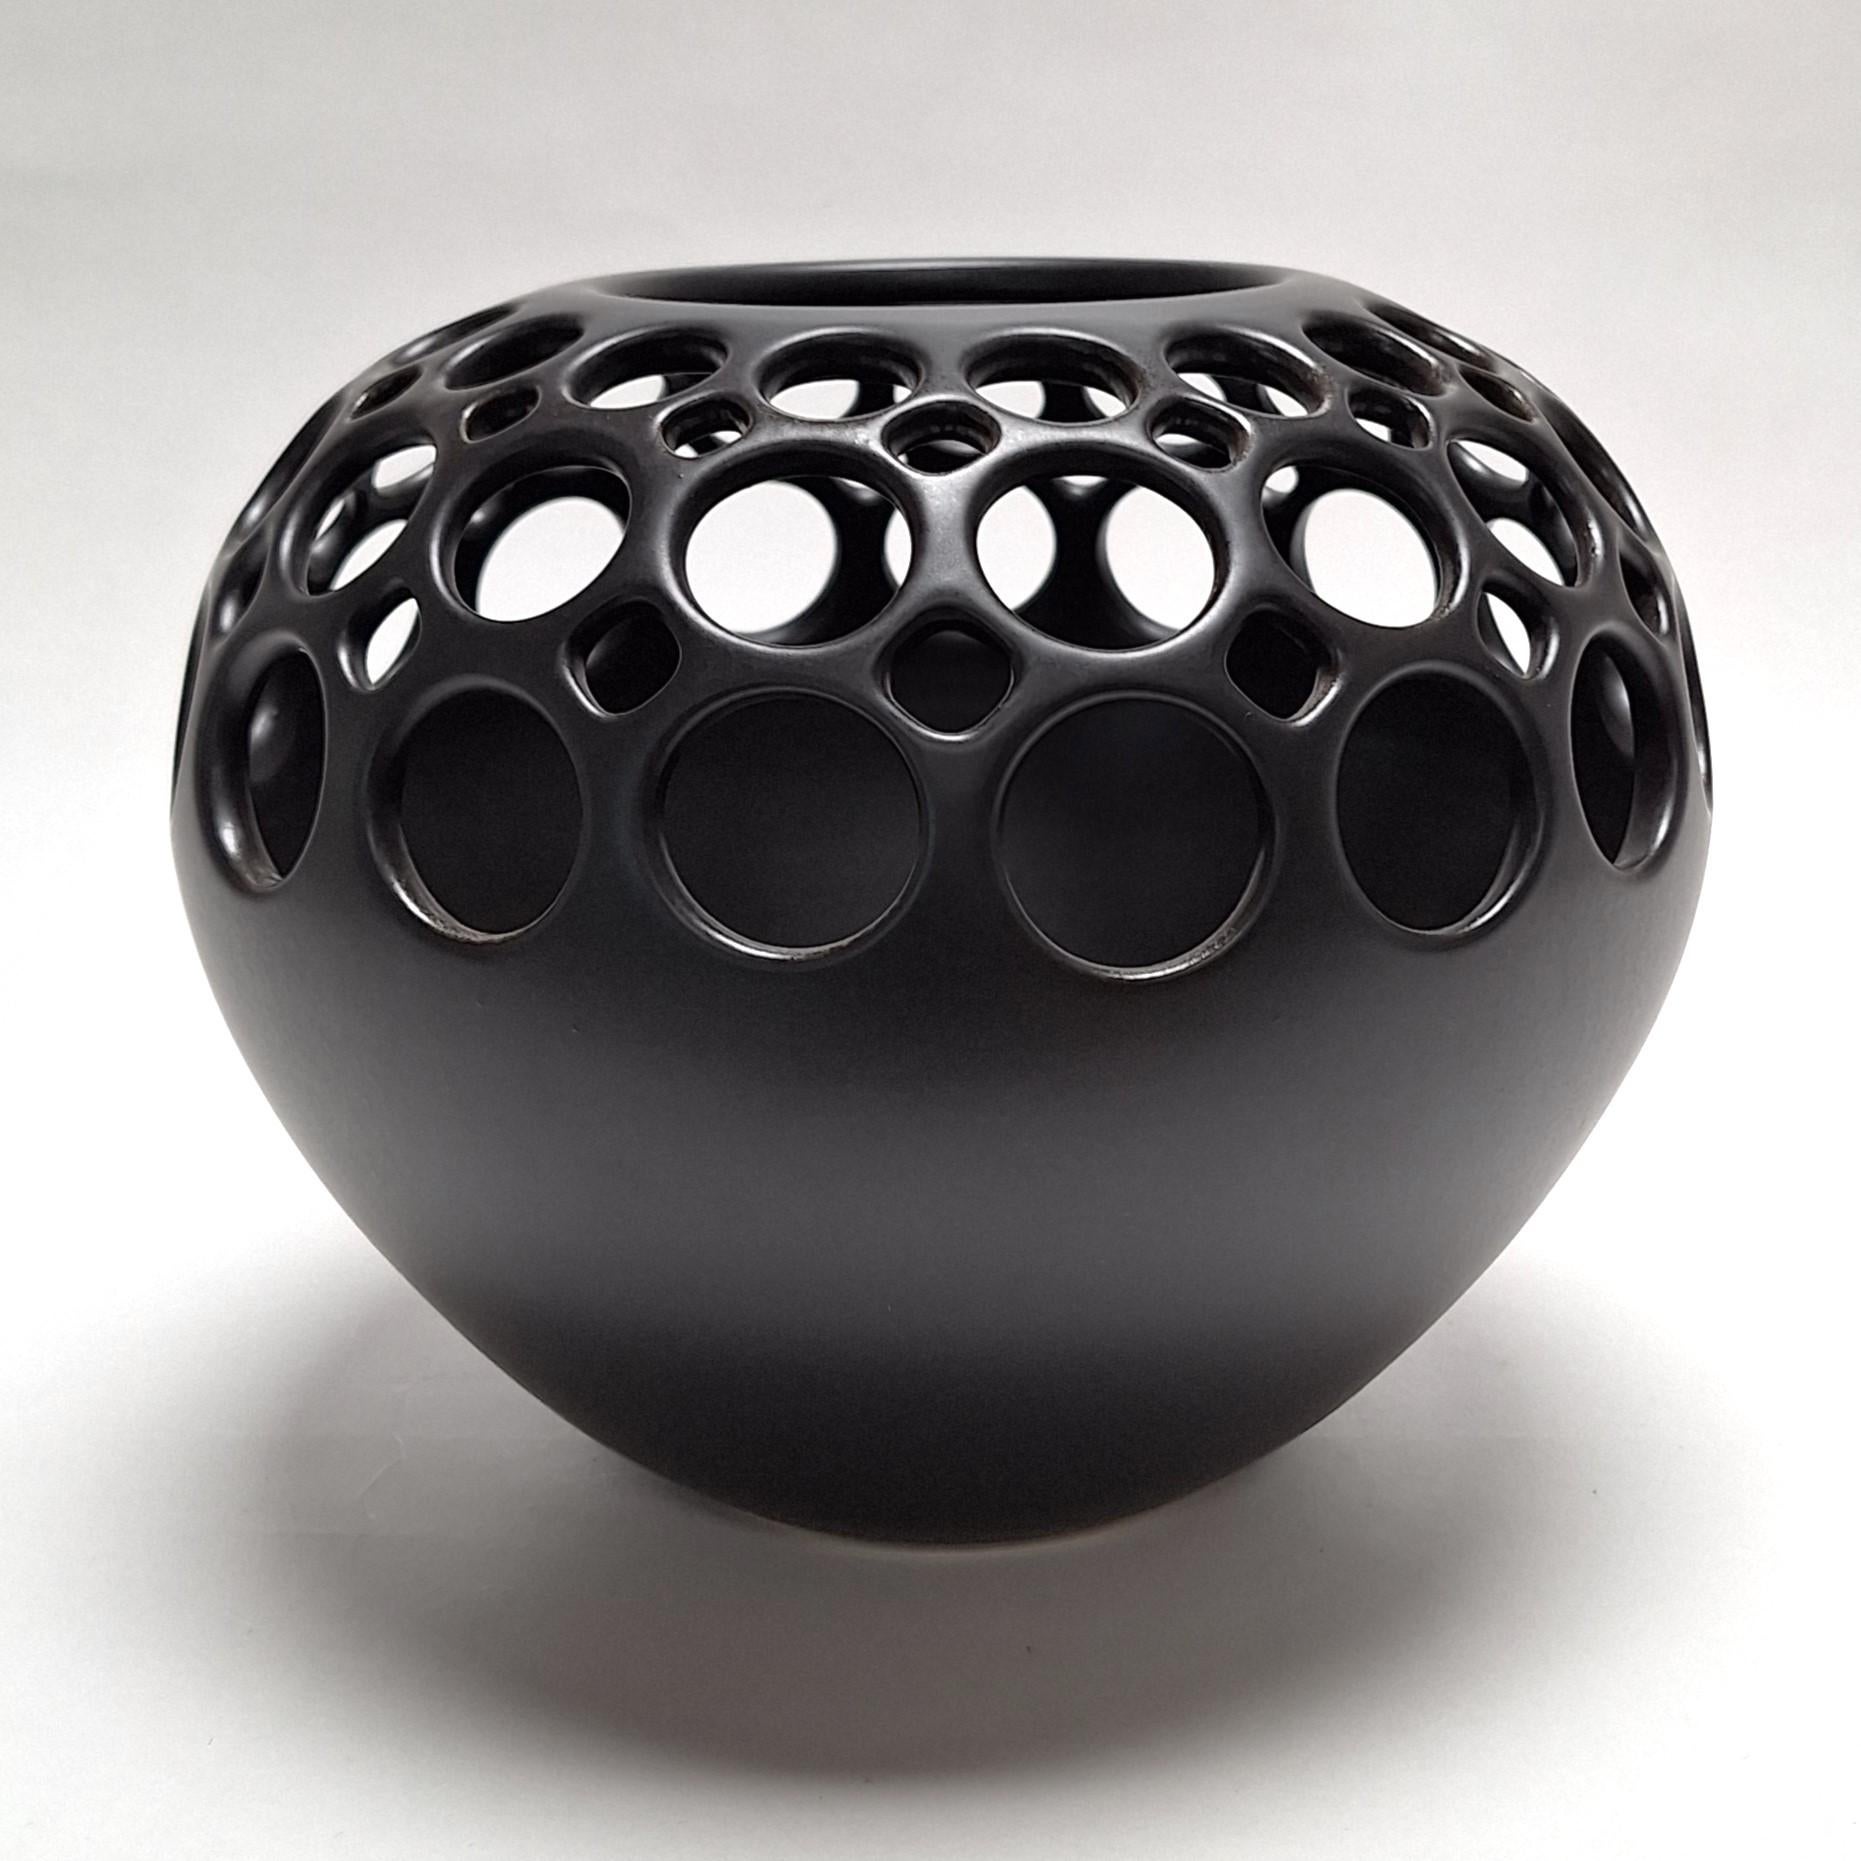 Ce vase Orb Demi Round Lace Black est un objet unique de taille moyenne en céramique contemporaine moderne de l'artiste californienne Lynne Meade. Il a été jeté au tour, percé à la main et a une glaçure lisse noire satinée. Tout est fait à l'œil,